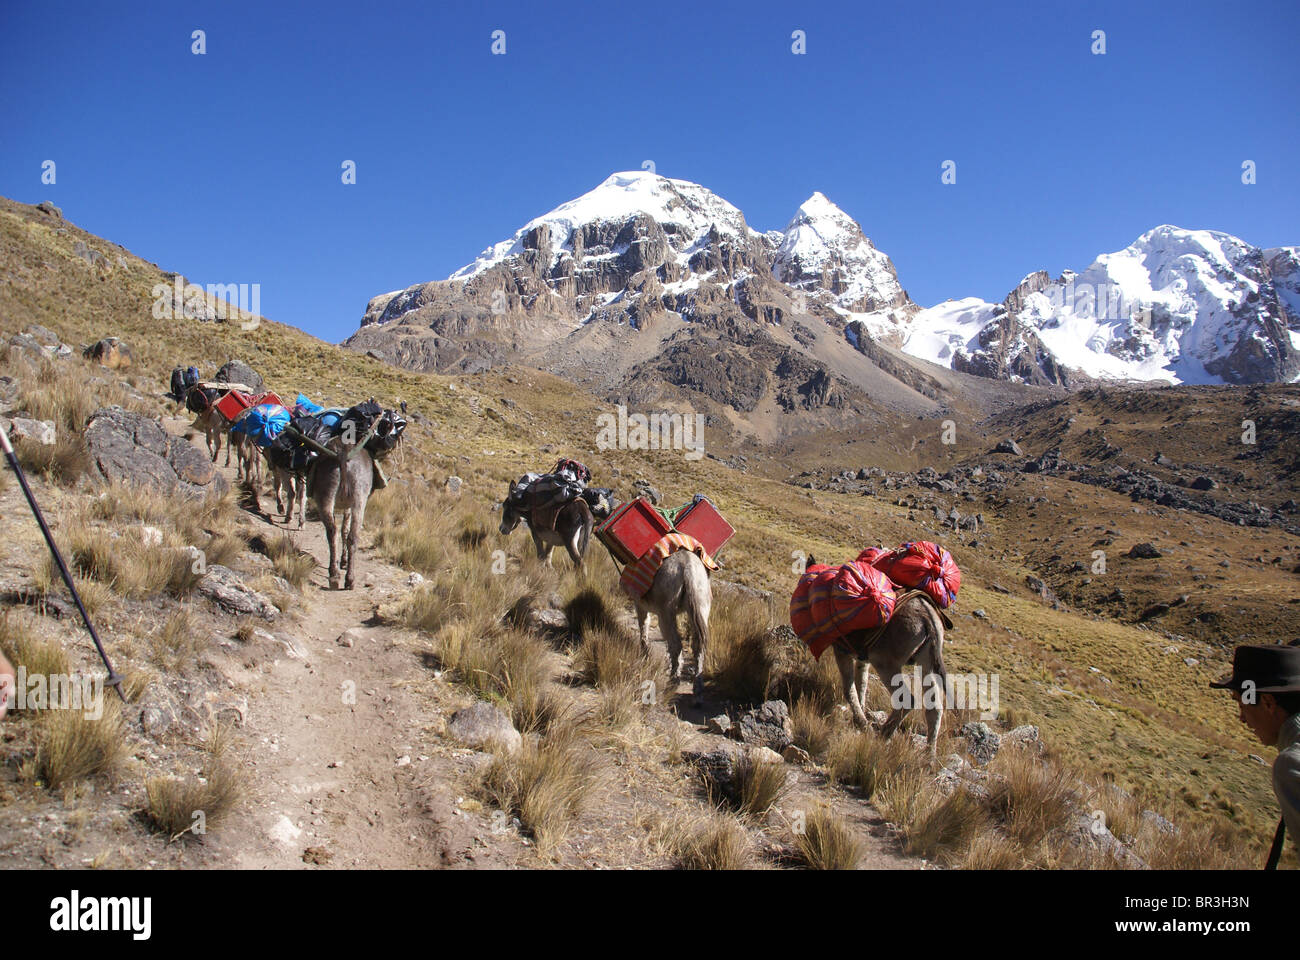 Mule Train, transport de charges, avec Cuyoc montagne en arrière-plan, Cordillera Huayhuash, Andes, Pérou, Amérique du Sud Banque D'Images